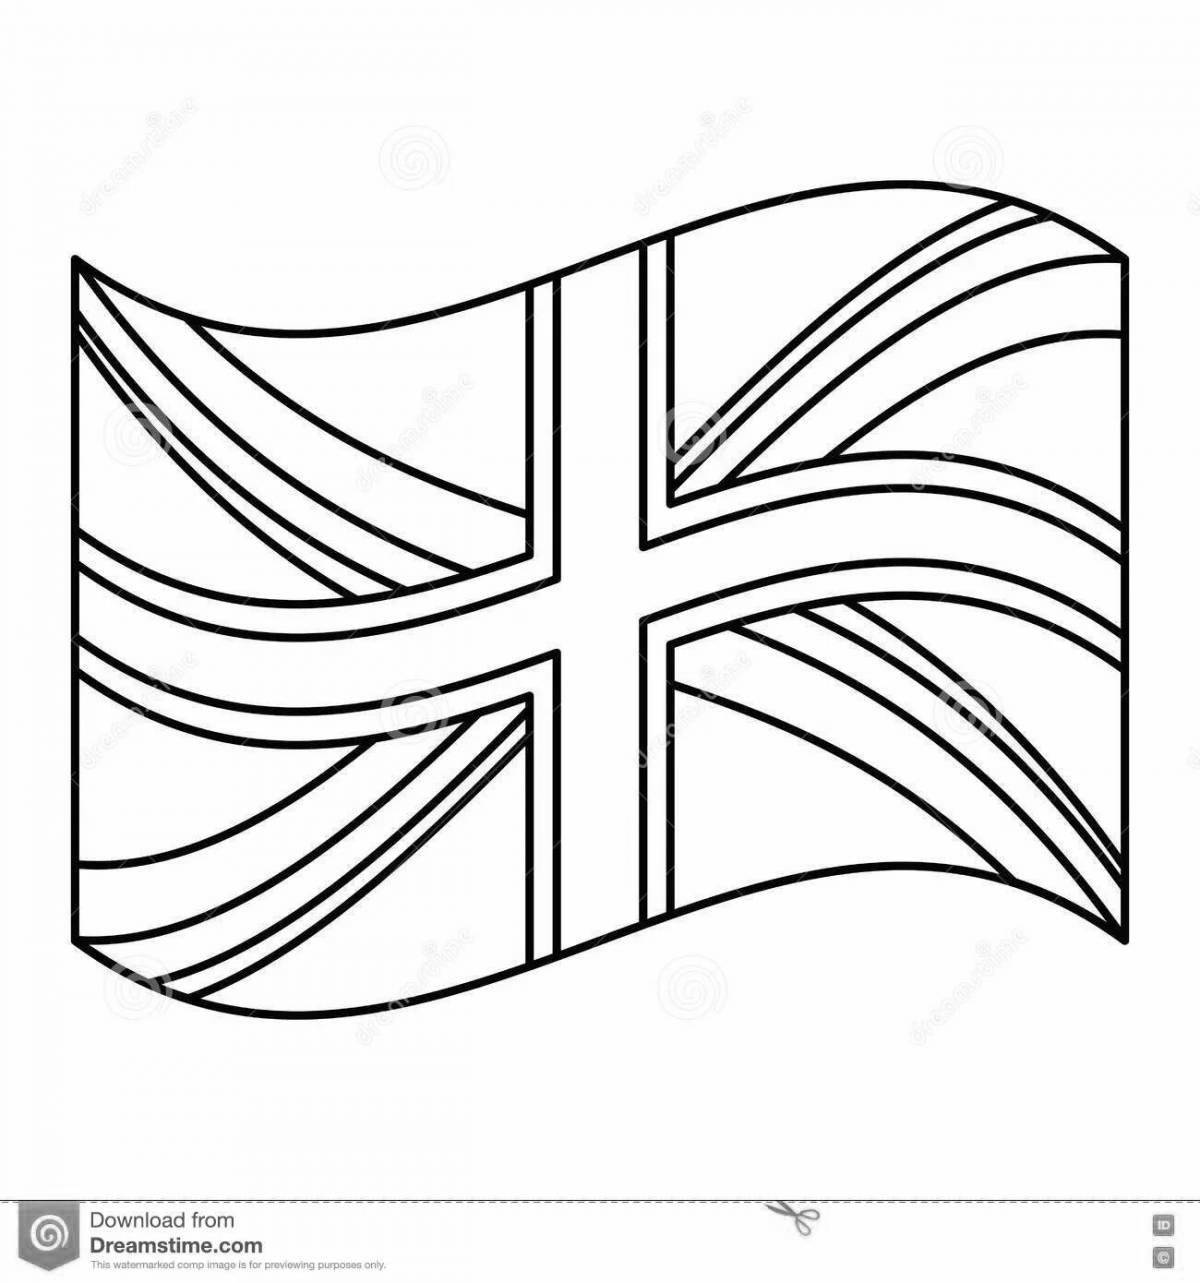 Флаг англии Изображения – скачать бесплатно на Freepik